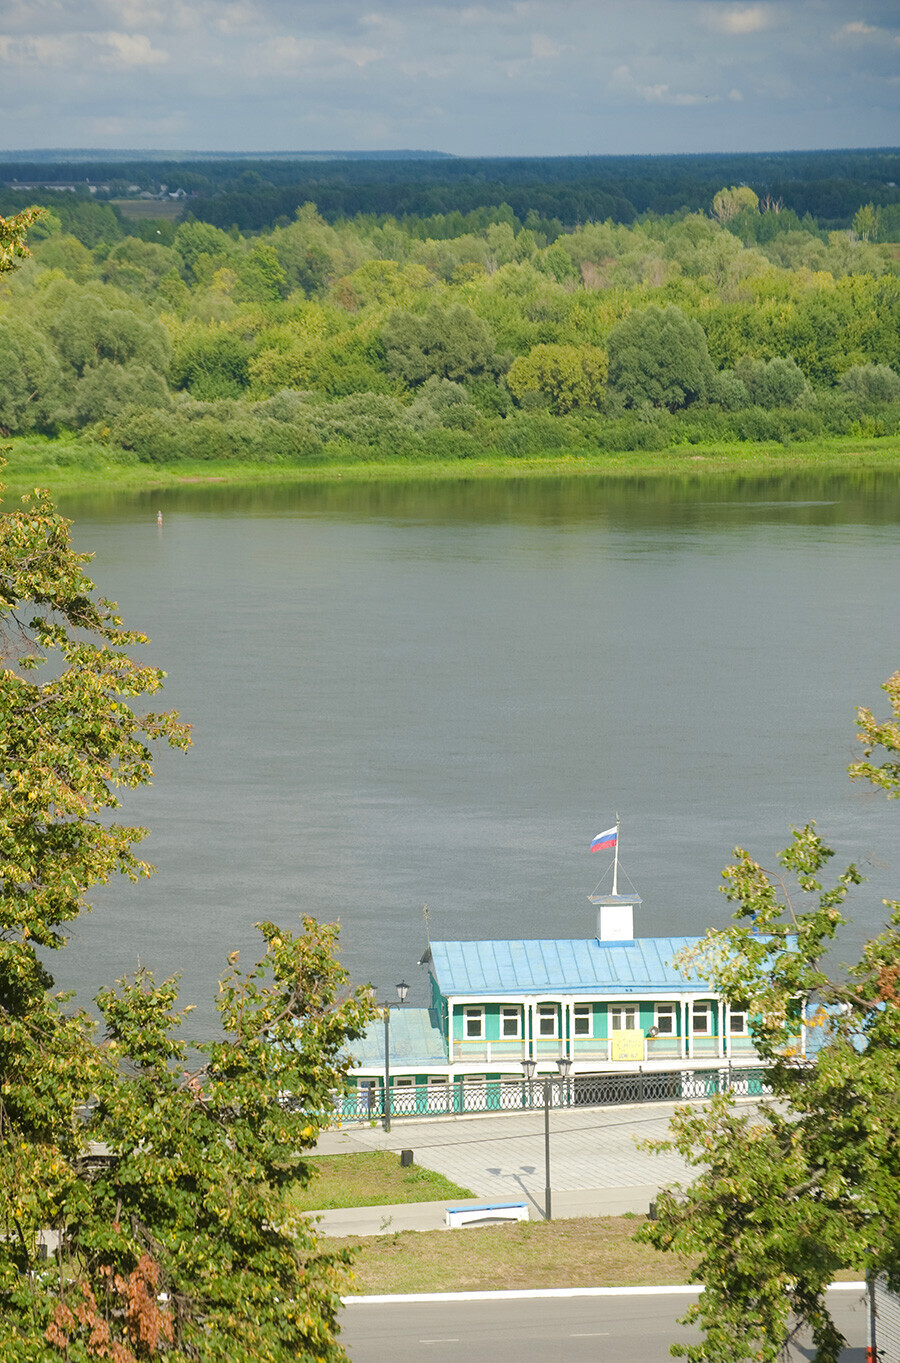 Mourom. Gare de passagers de la rivière Oka (structure flottante typique en bois). 16 août 2012